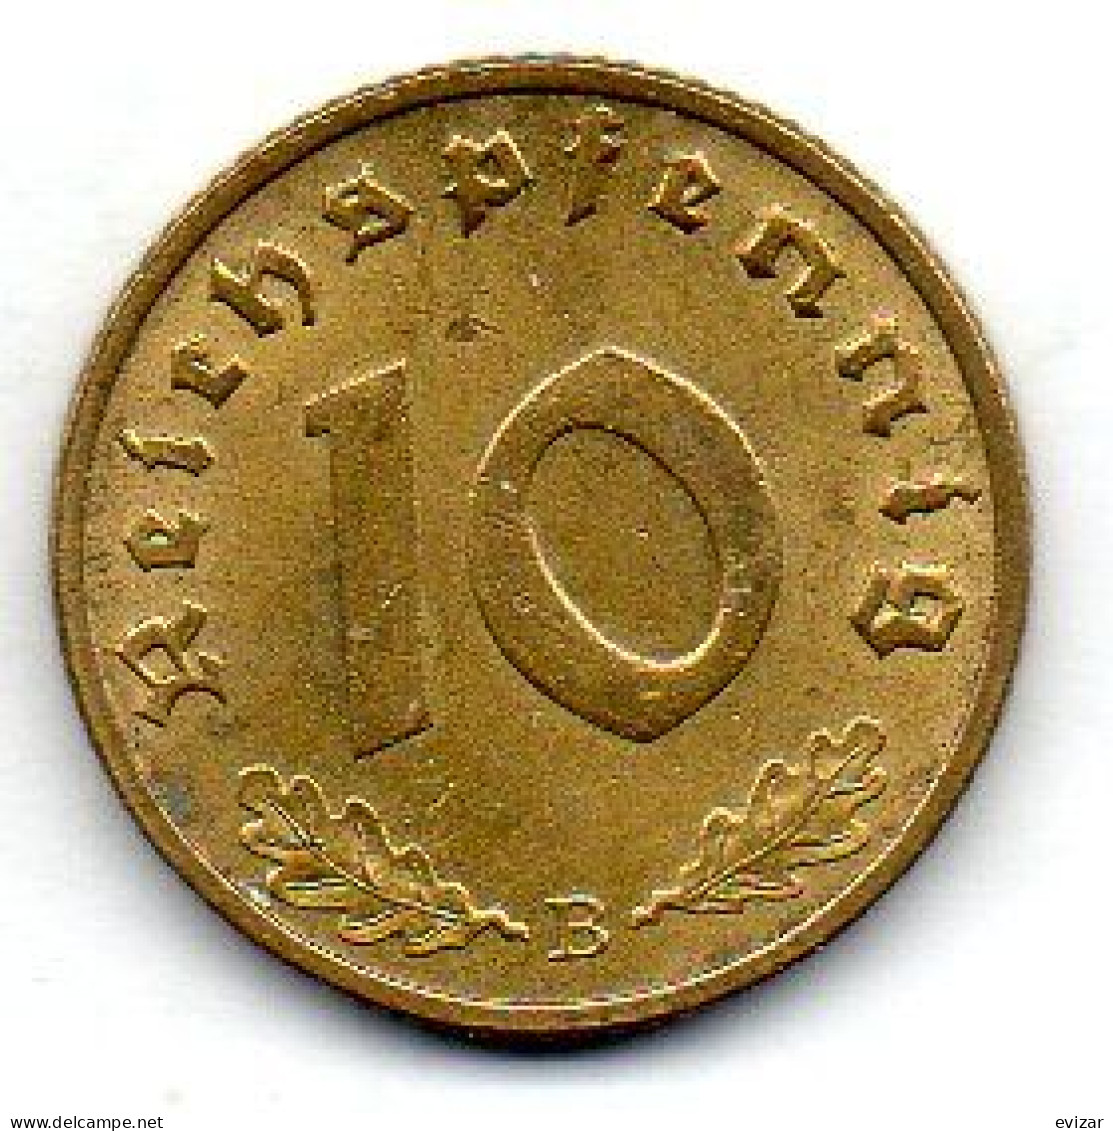 GERMANY - THIRD REICH, 10 Reichs Pfennig, Aluminum-Bronze, Year 1938-B, KM # 92 - 10 Reichspfennig